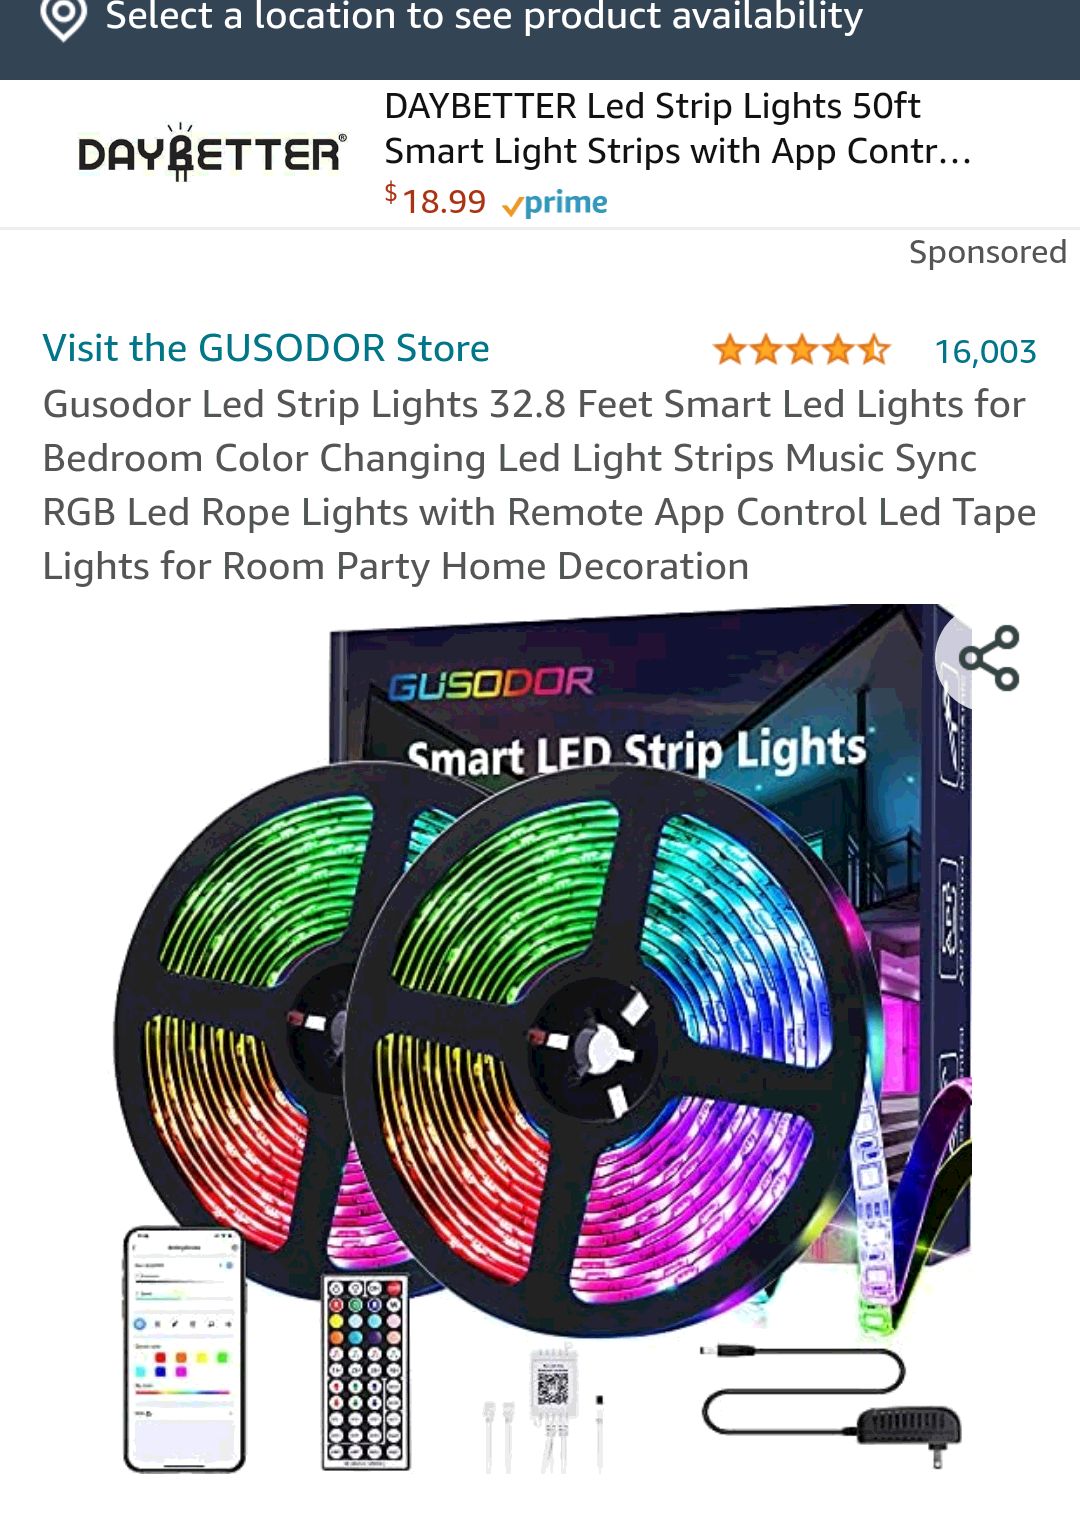 Gusodor Led 灯带 32.8 英尺智能 LED 灯，适用于卧室变色 Led 灯条音乐同步 RGB Led 绳索灯带远程应用程序控制 LED 胶带灯，用于房间派对家居装饰：